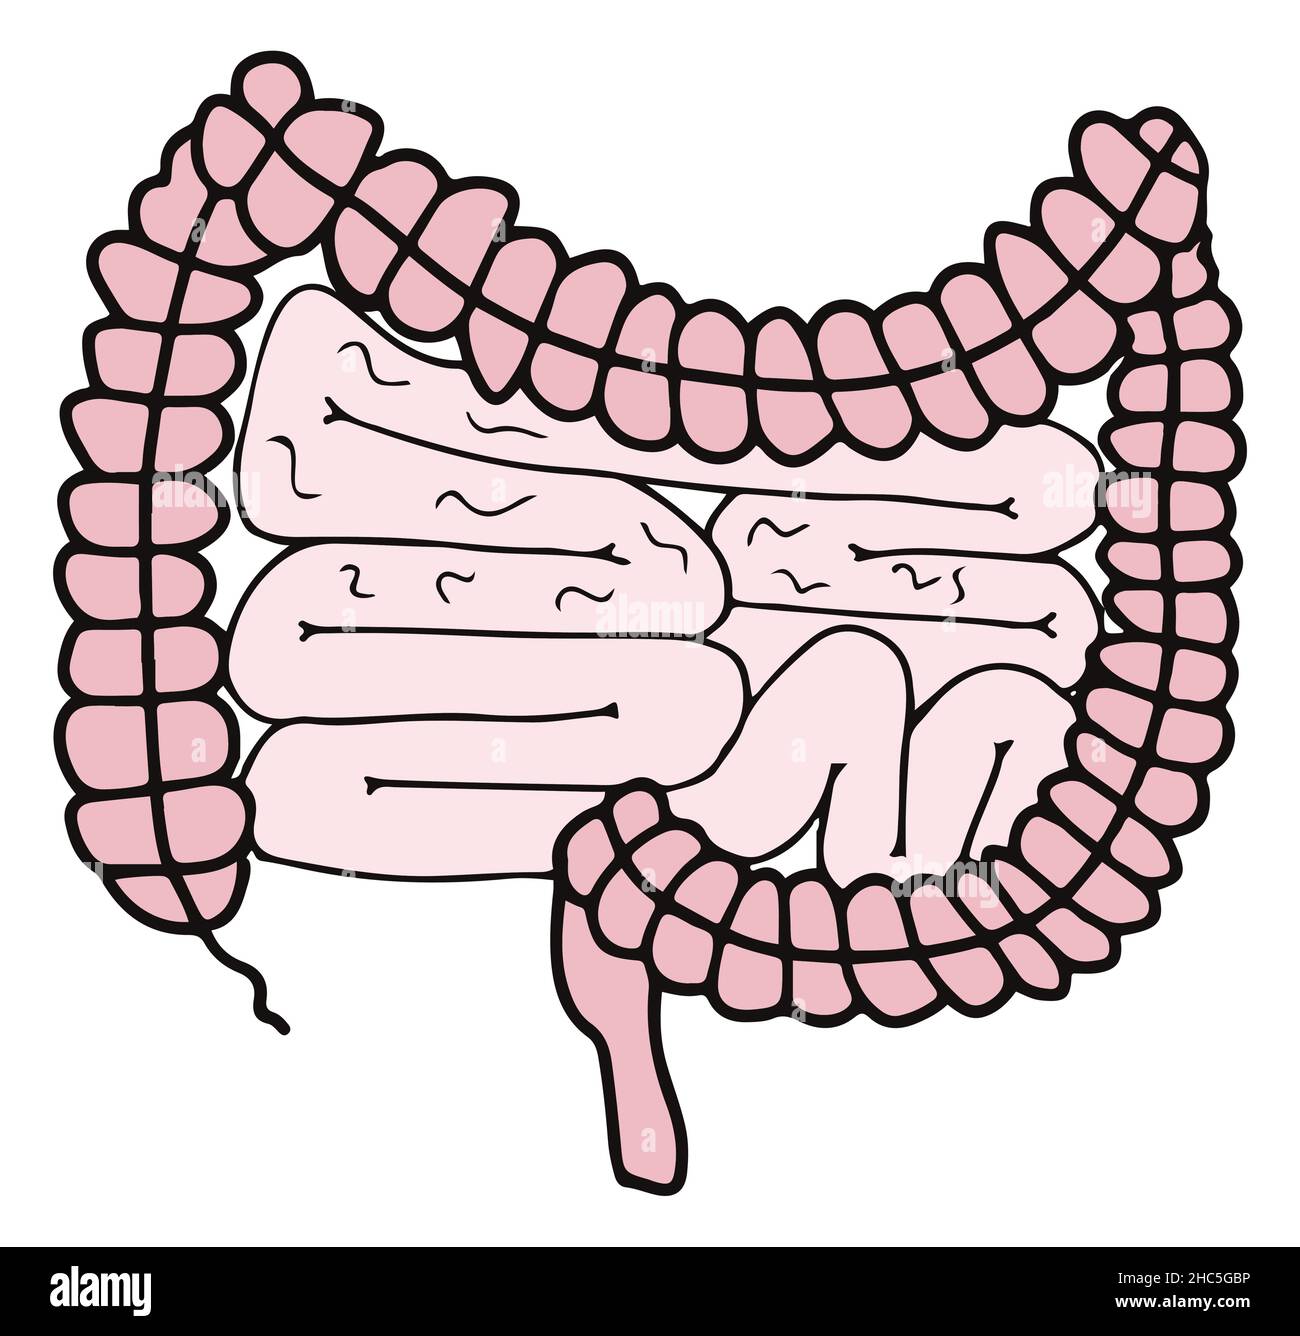 Einfache gastrointestinale Darstellung des inneren Darmsystems. Gesundes Darmkonzept. Menschliche Körperteile im Vektor Stock Vektor